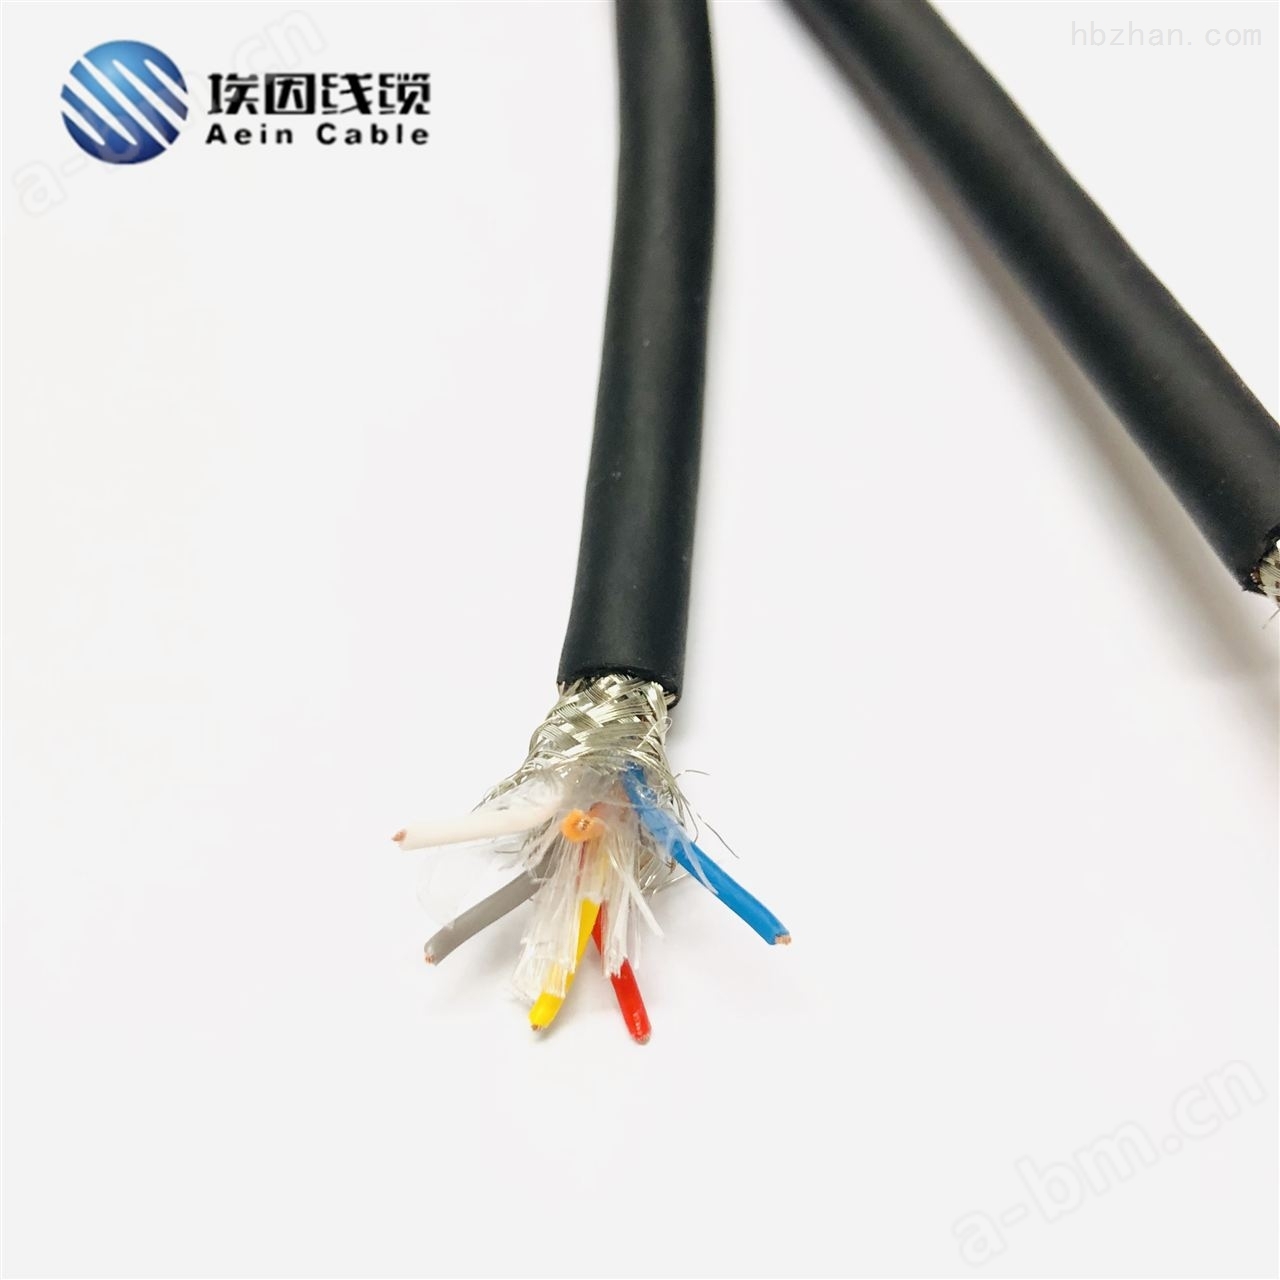 橡胶电缆生产厂家